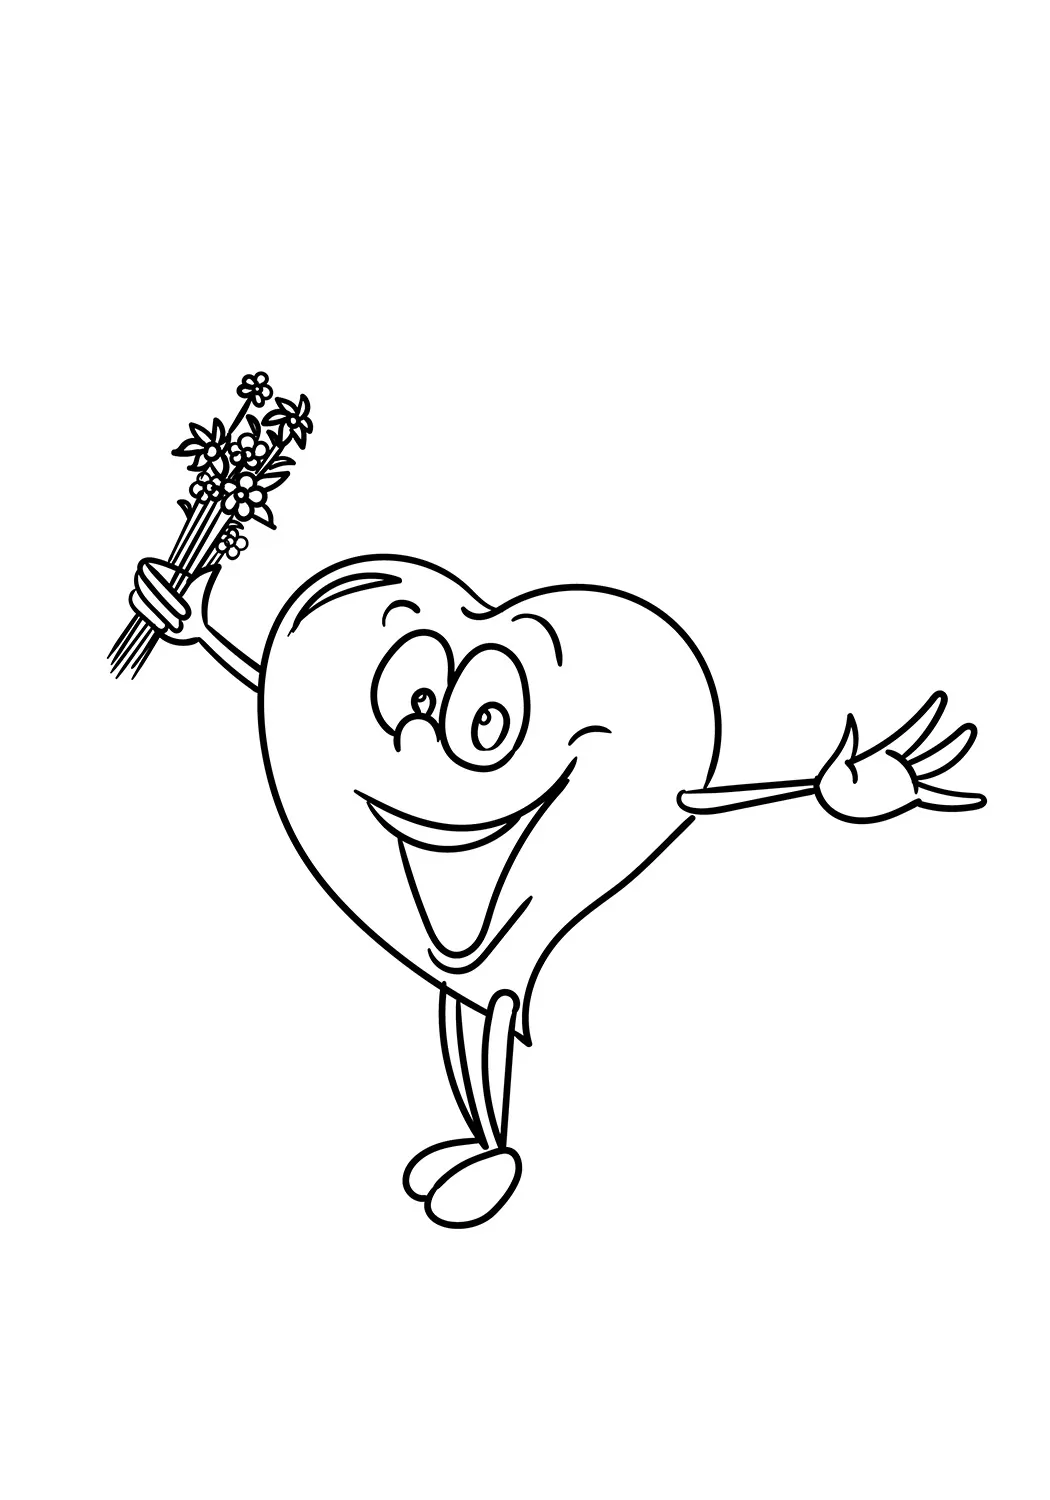 Happy Cartoon Heart